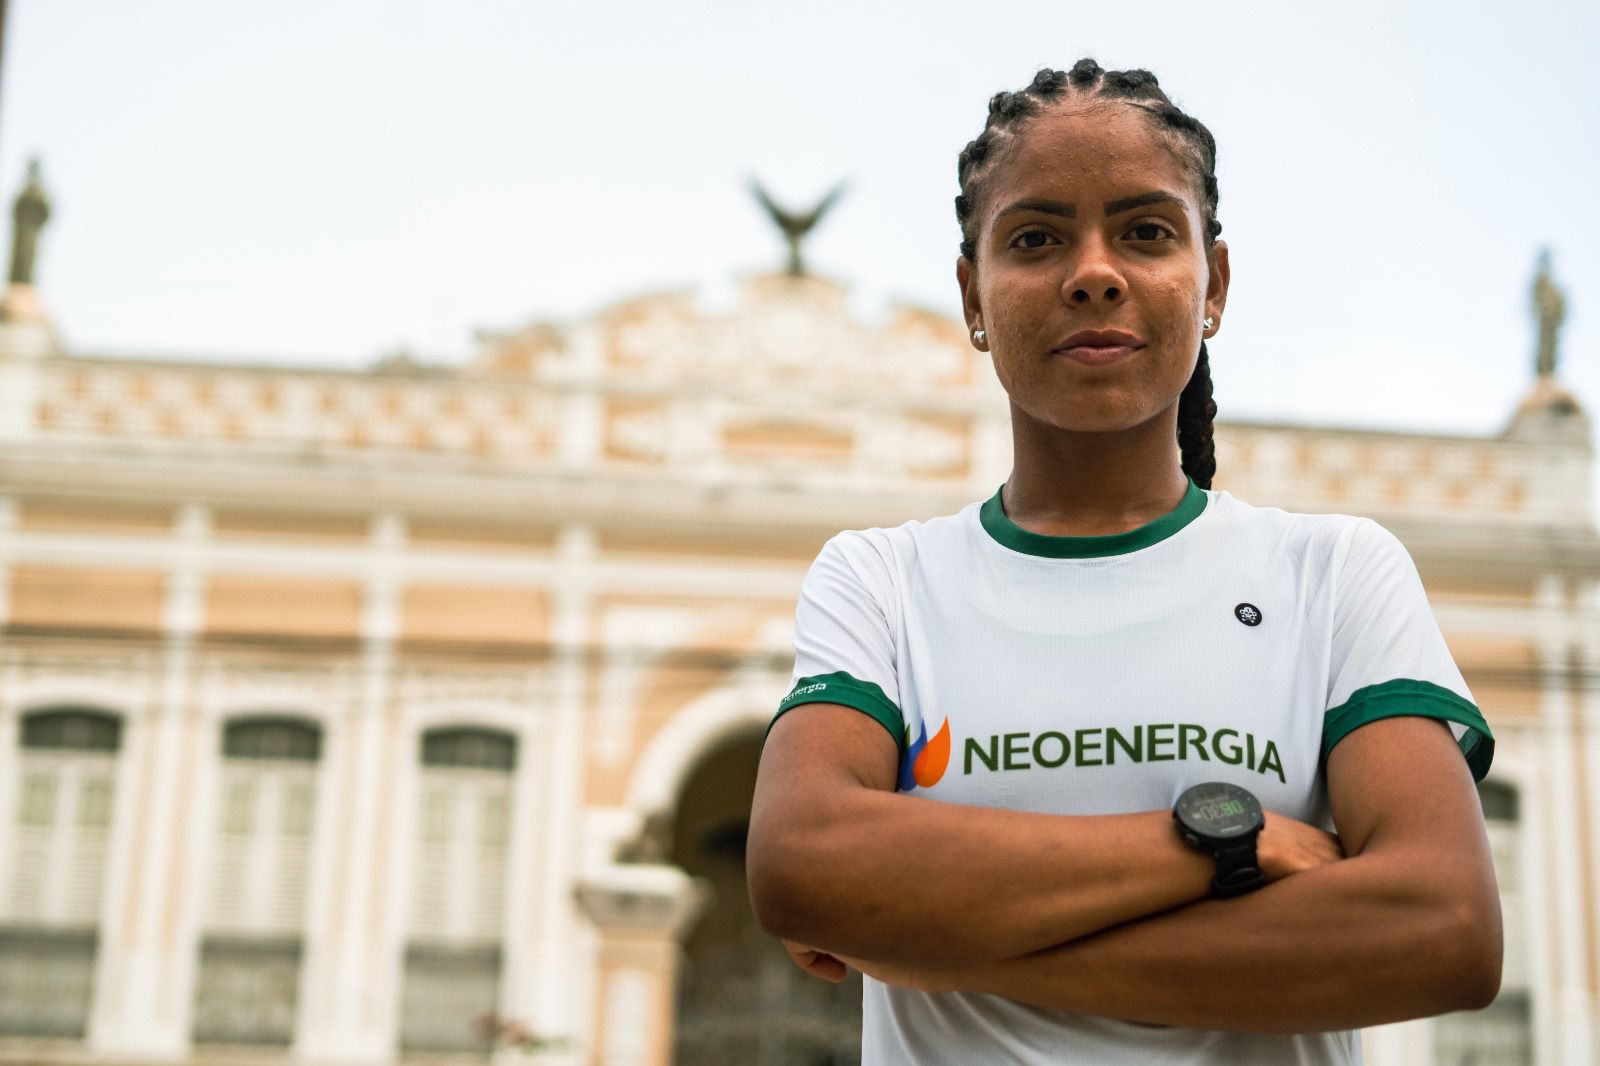 Pernambuco veut être la première femme indigène à représenter le Brésil aux Jeux olympiques